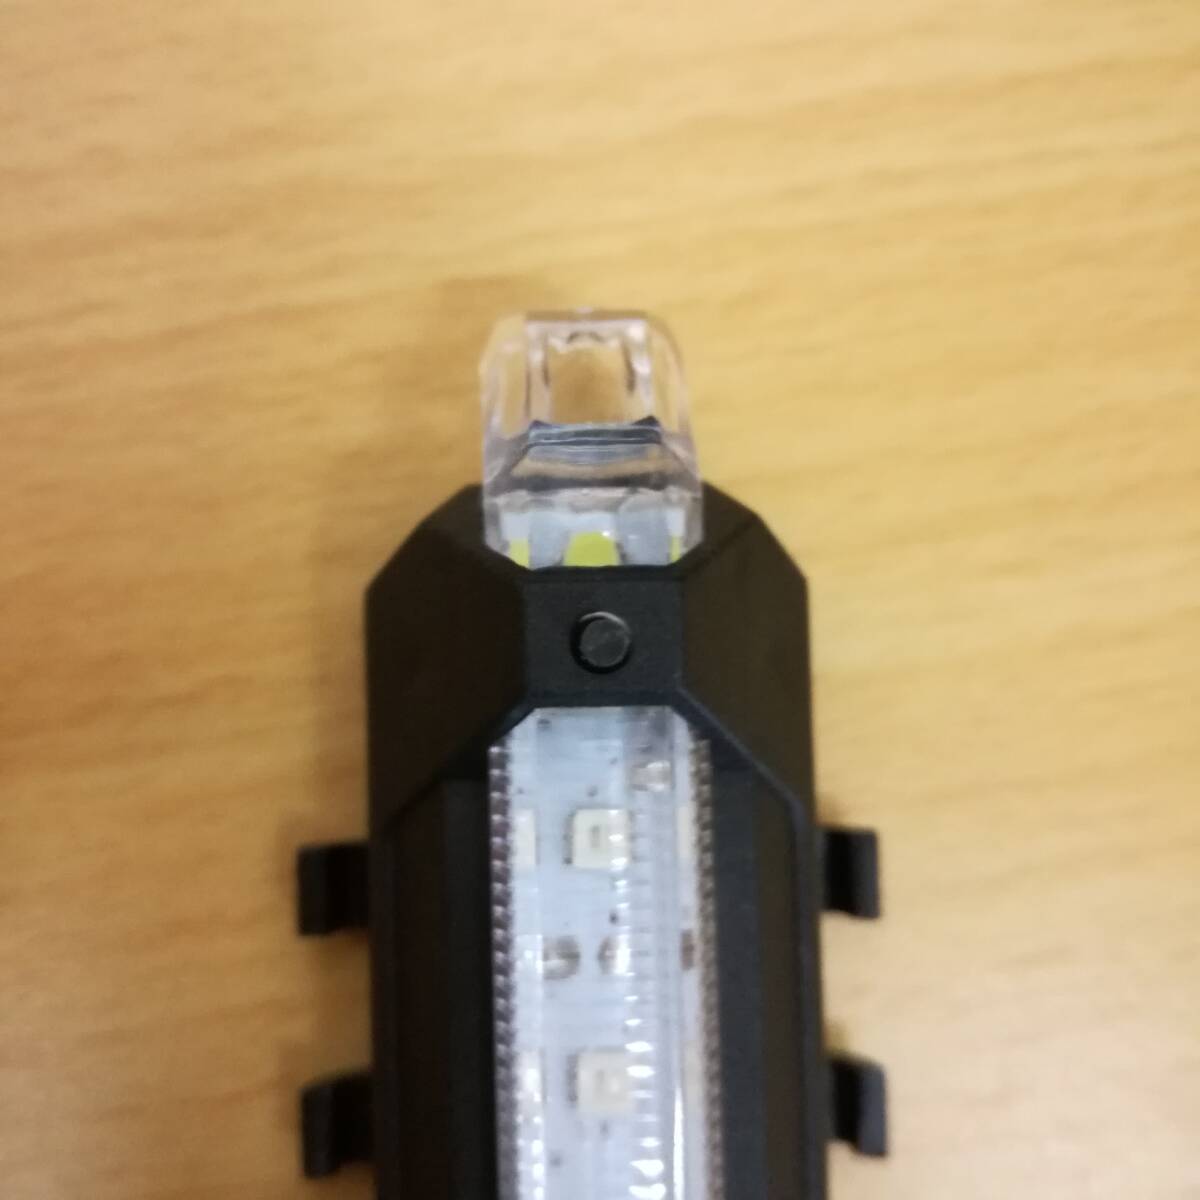 LED フラッシュライト 5色 レインボー USB充電式 自転車用 テールライト テールランプ バックライト リアライト 送料無料 夜間 安全運転_画像9